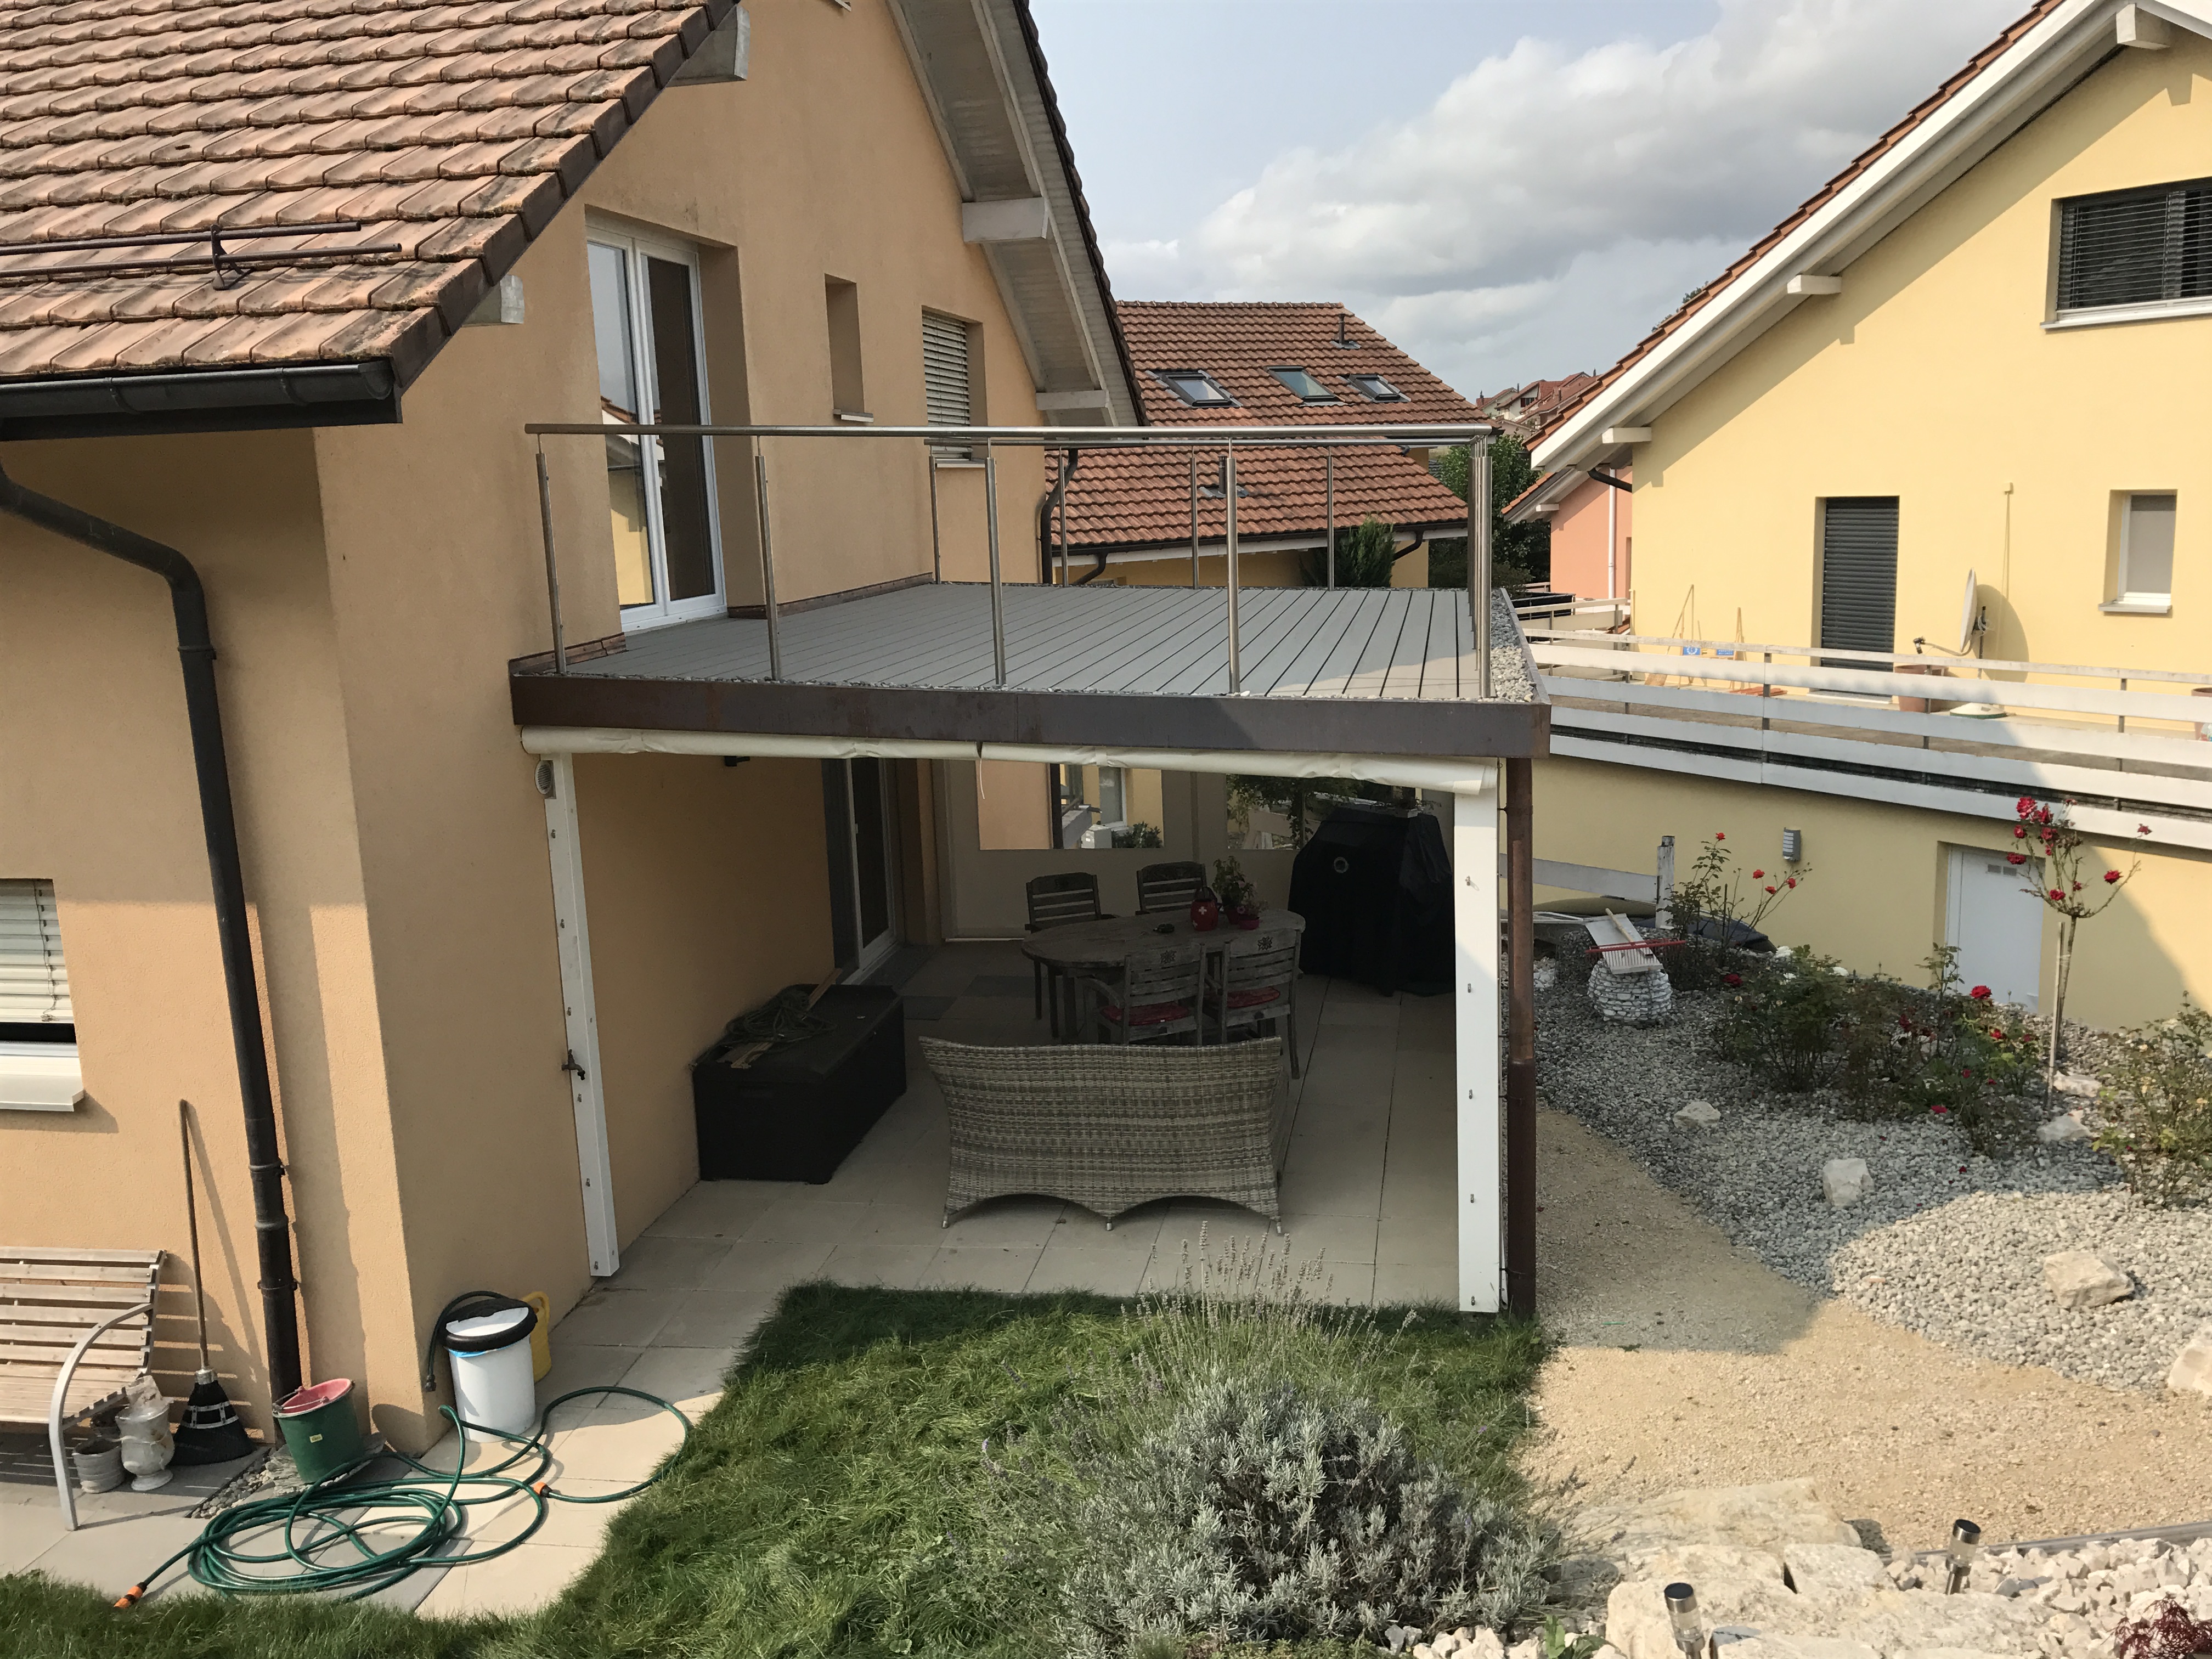 Couvert et terrasse en WPC à Avenches – Stauffacher Charpentes SA